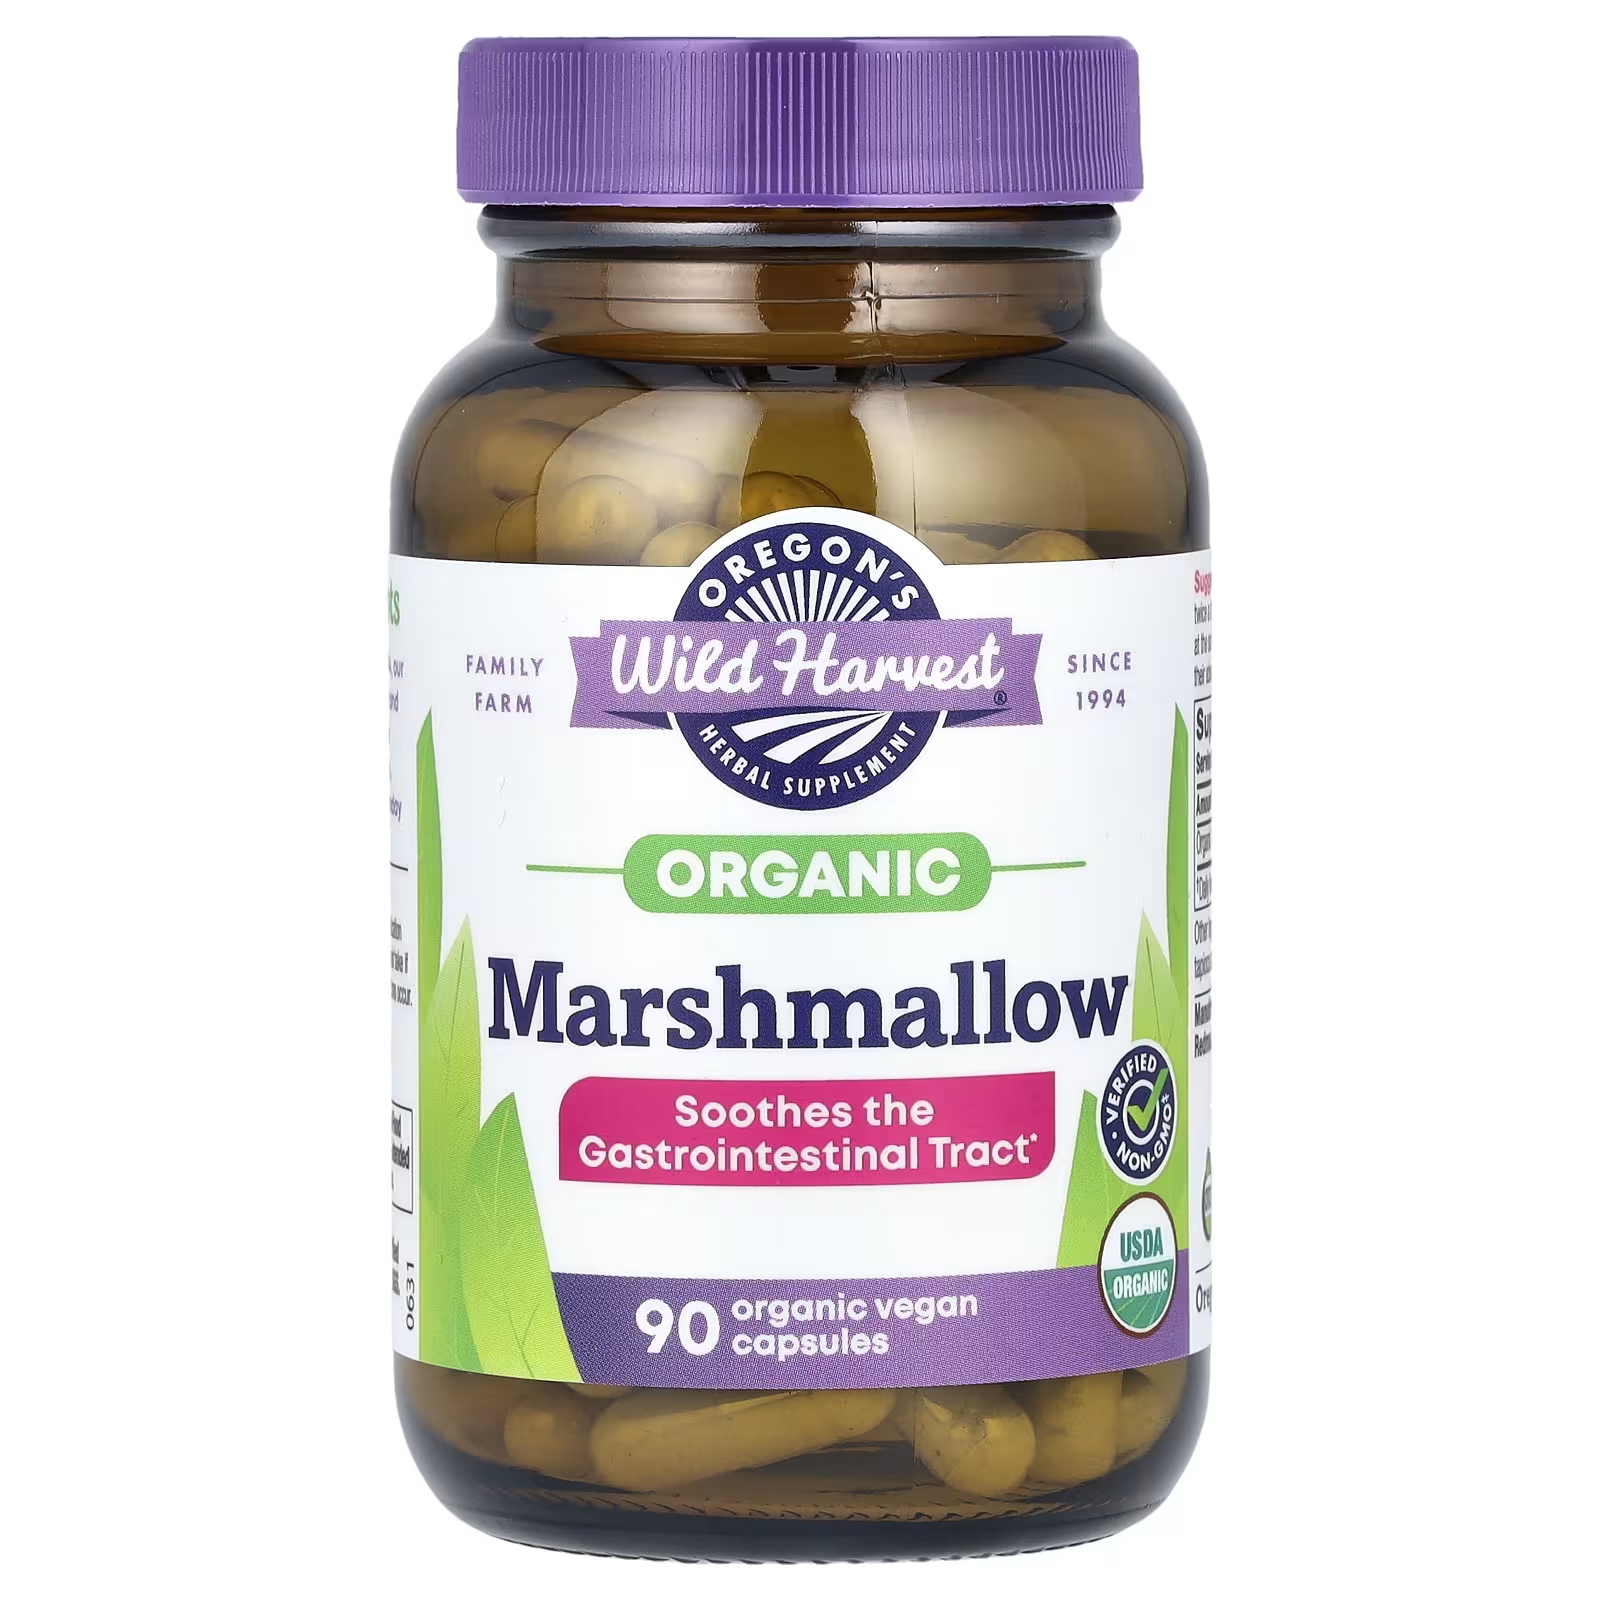 лучевая диагностика желудочно кишечный тракт 3 е издание брамбс х ю Травяная добавка Oregons Wild Harvest Organic Marshmallow, 90 органических веганских капсул